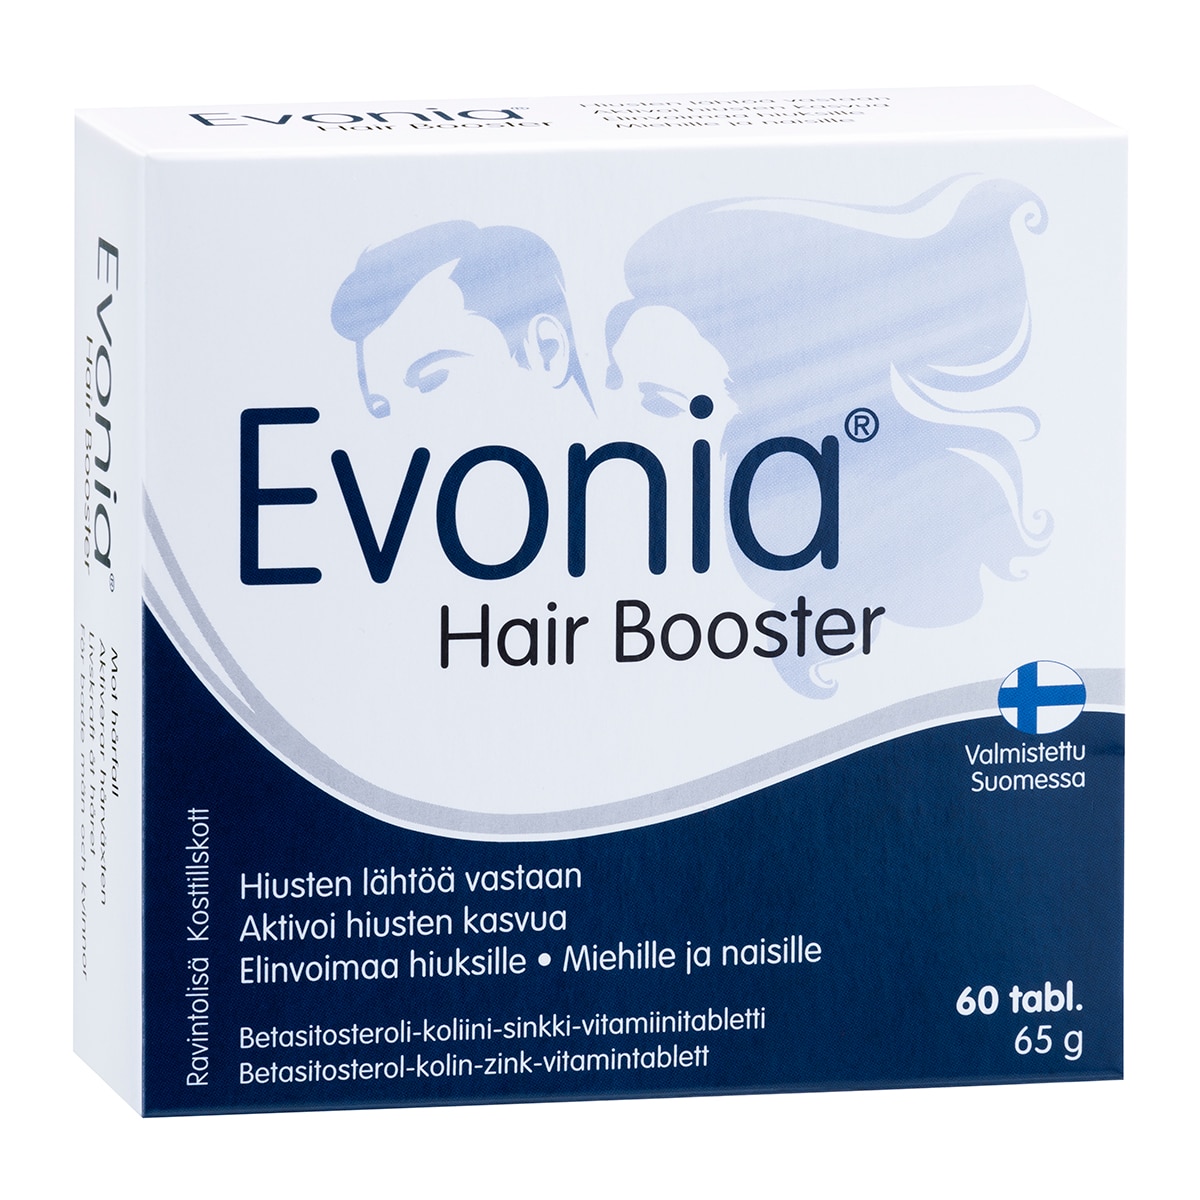 Evonia Hair Booster 60 tab